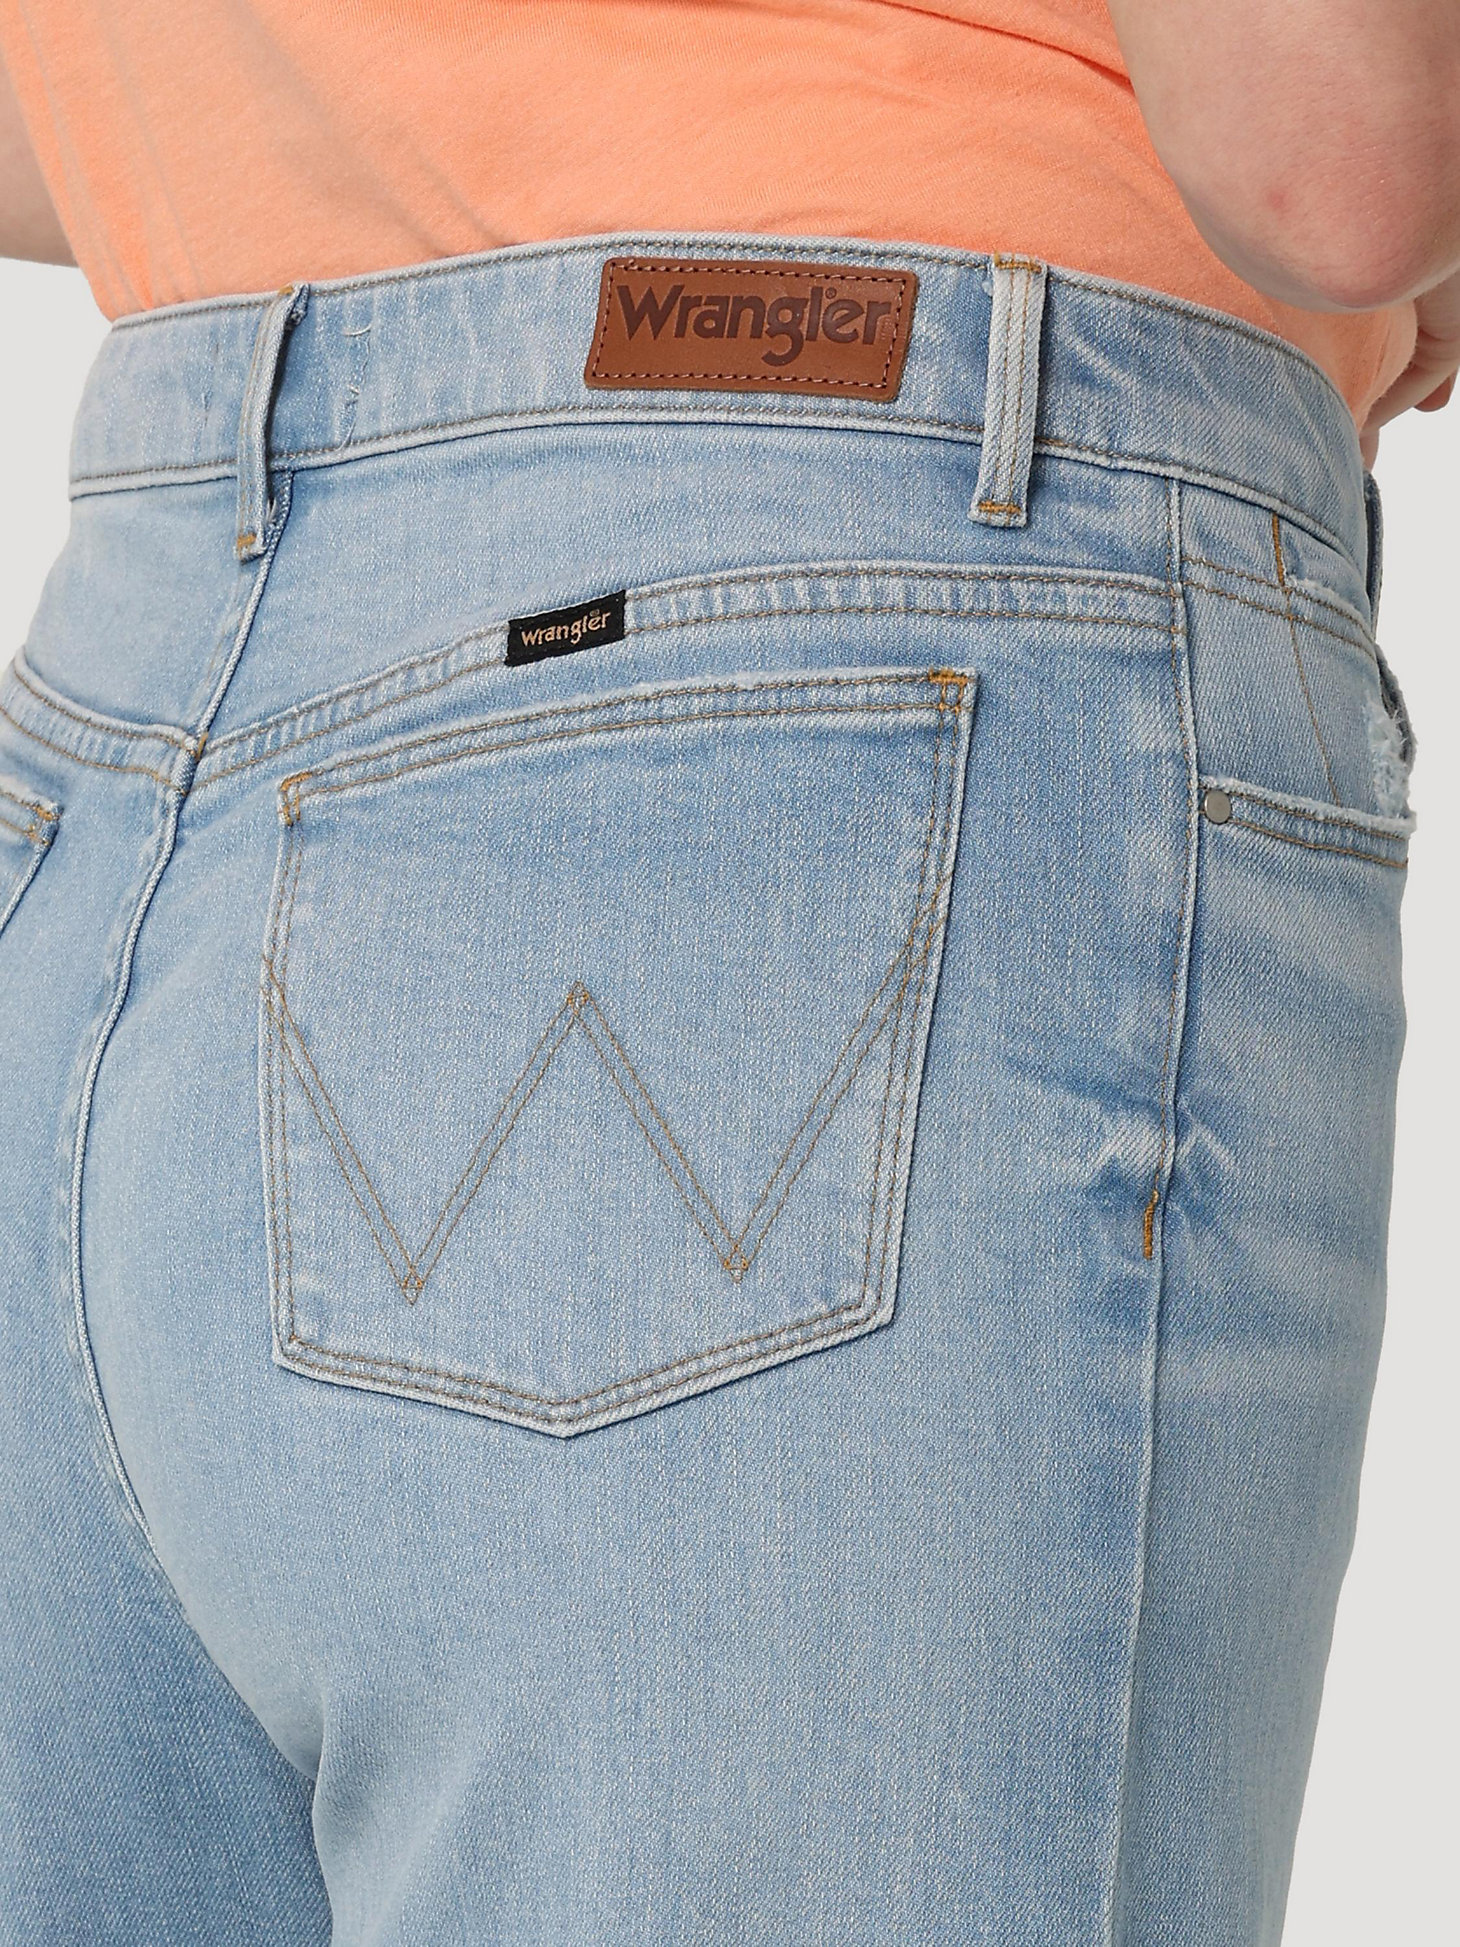 Women's Loose Fit Jean in Light Wash alternative view 5